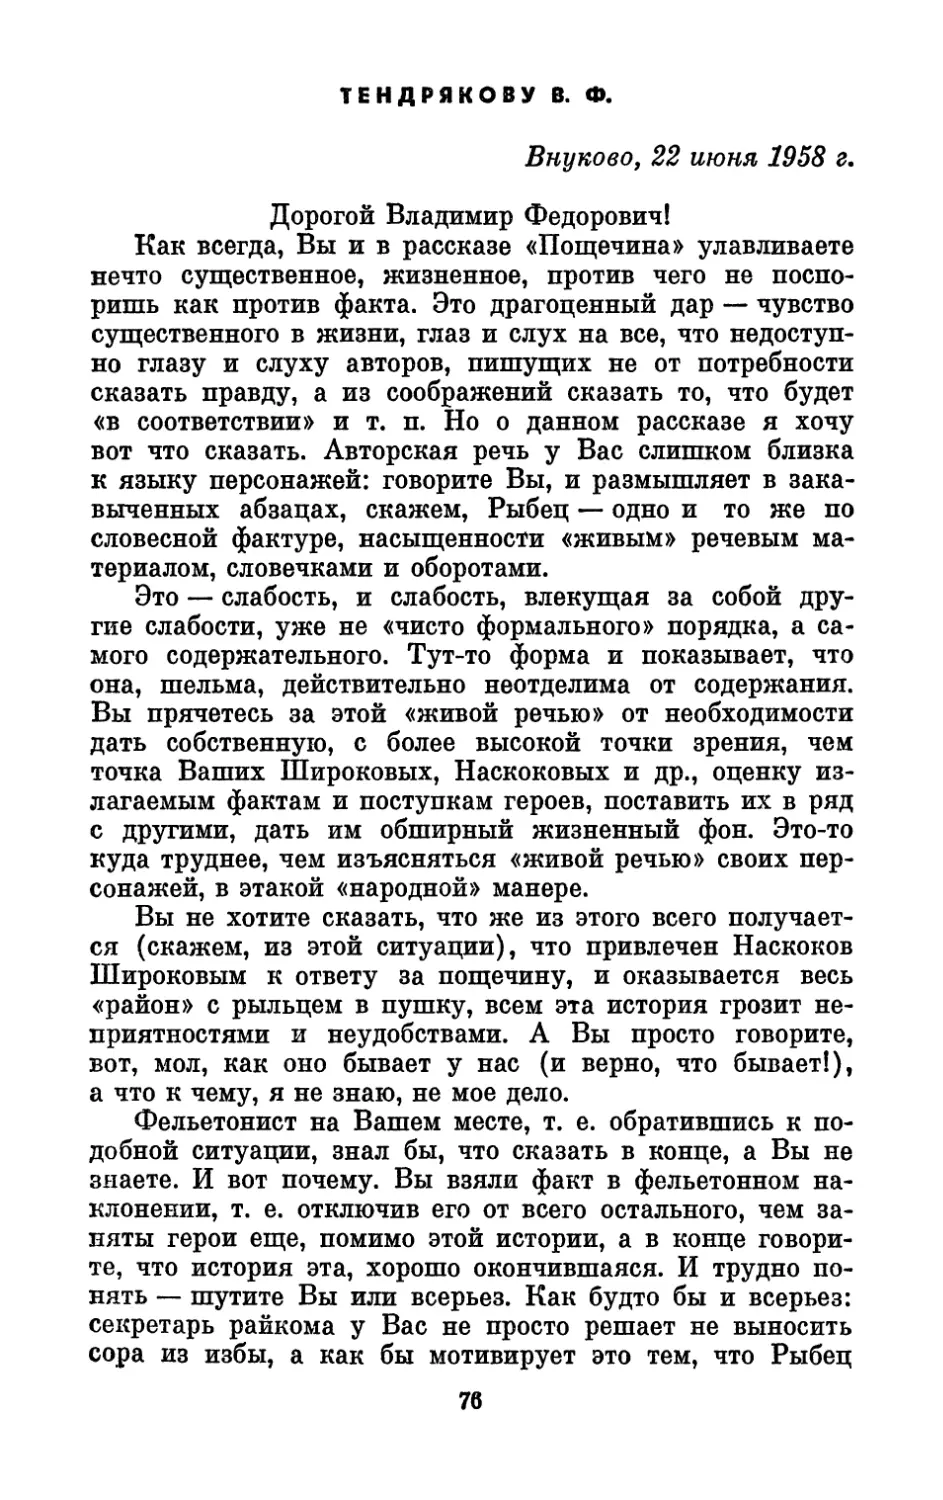 Тендрякову В. Ф., 22 июня 1958 г.